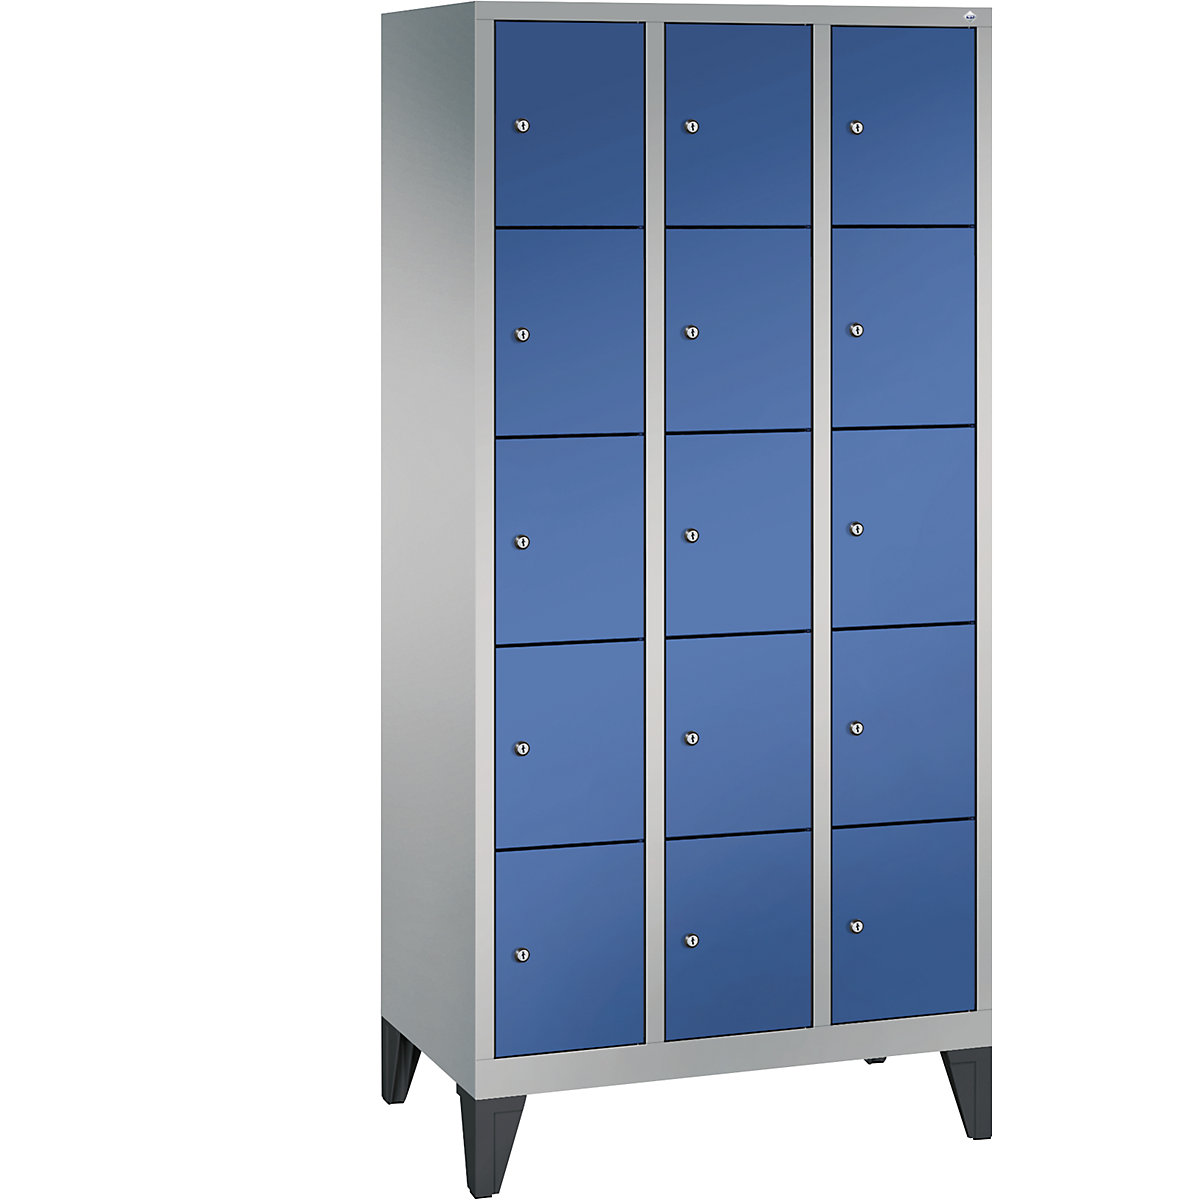 CLASSIC locker unit with feet – C+P, 3 compartments, 5 shelf compartments each, compartment width 300 mm, white aluminium / gentian blue-3